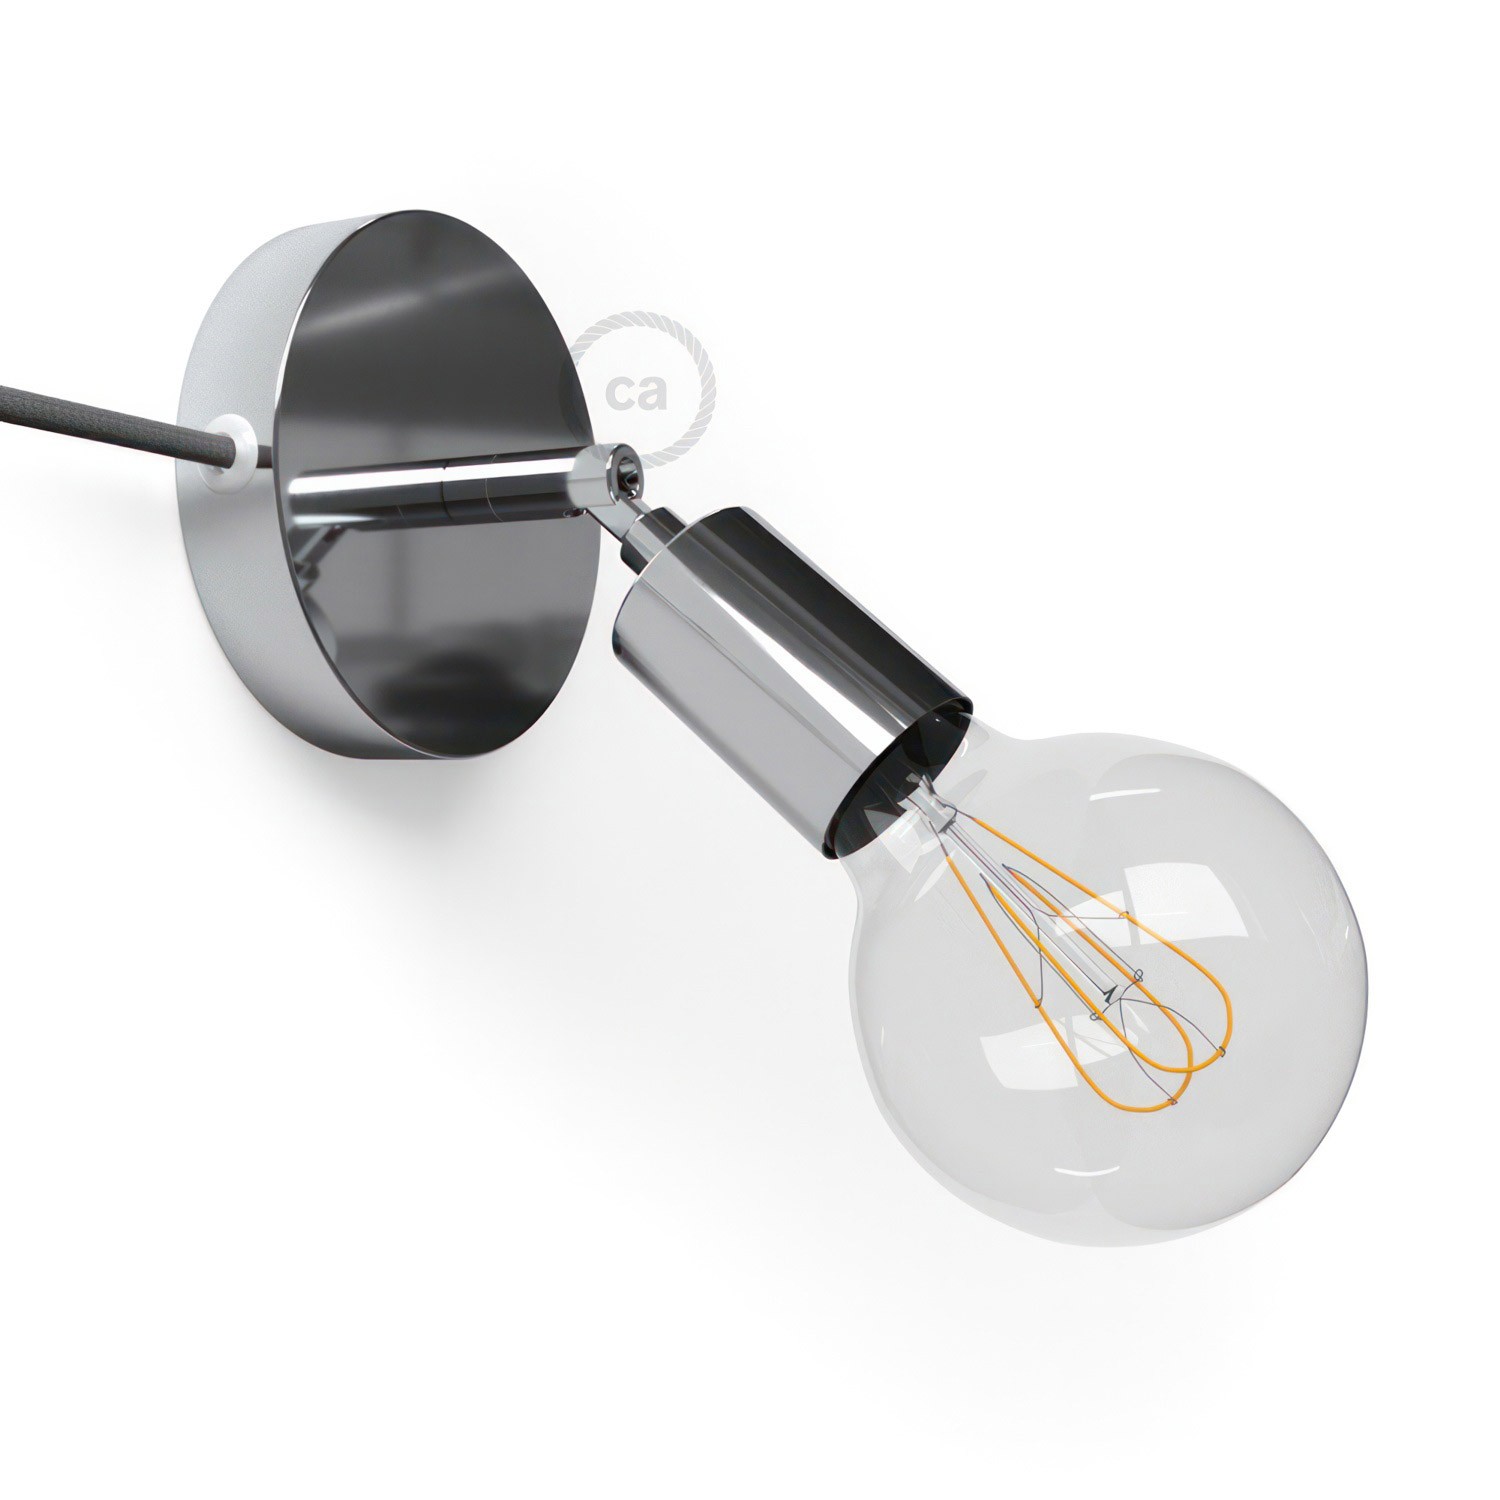 Spostaluce Metallo 90°, zglobna lampa s tekstilnim kabelom i bočnim rupama